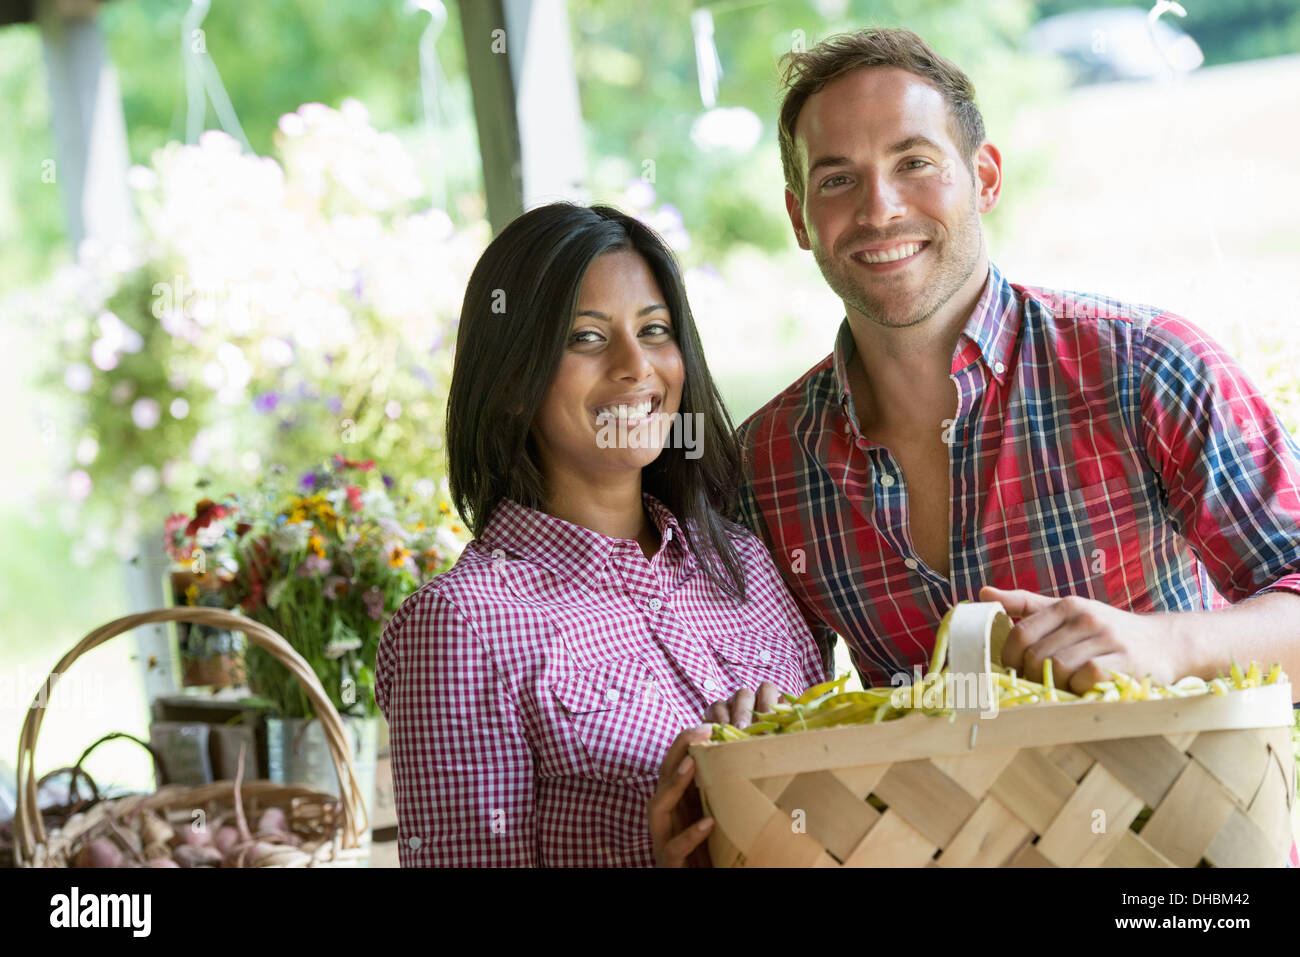 Ein Bauernhof Stand mit frischem Bio-Gemüse und Obst.  Ein Mann und eine Frau mit Körben von Bohnen. Stockfoto